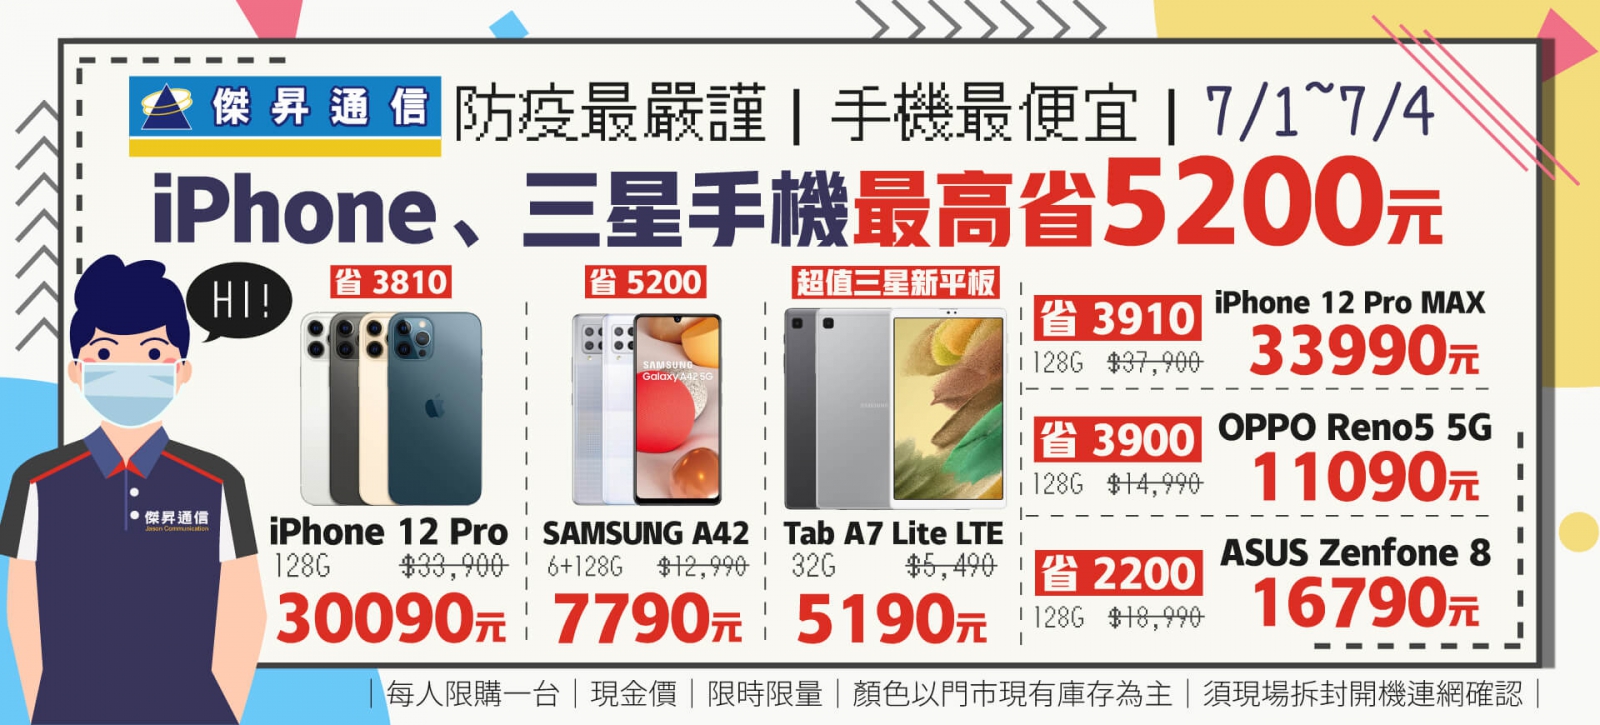 傑昇通信防疫最嚴謹、手機最便宜iPhone、三星手機最高省5200元